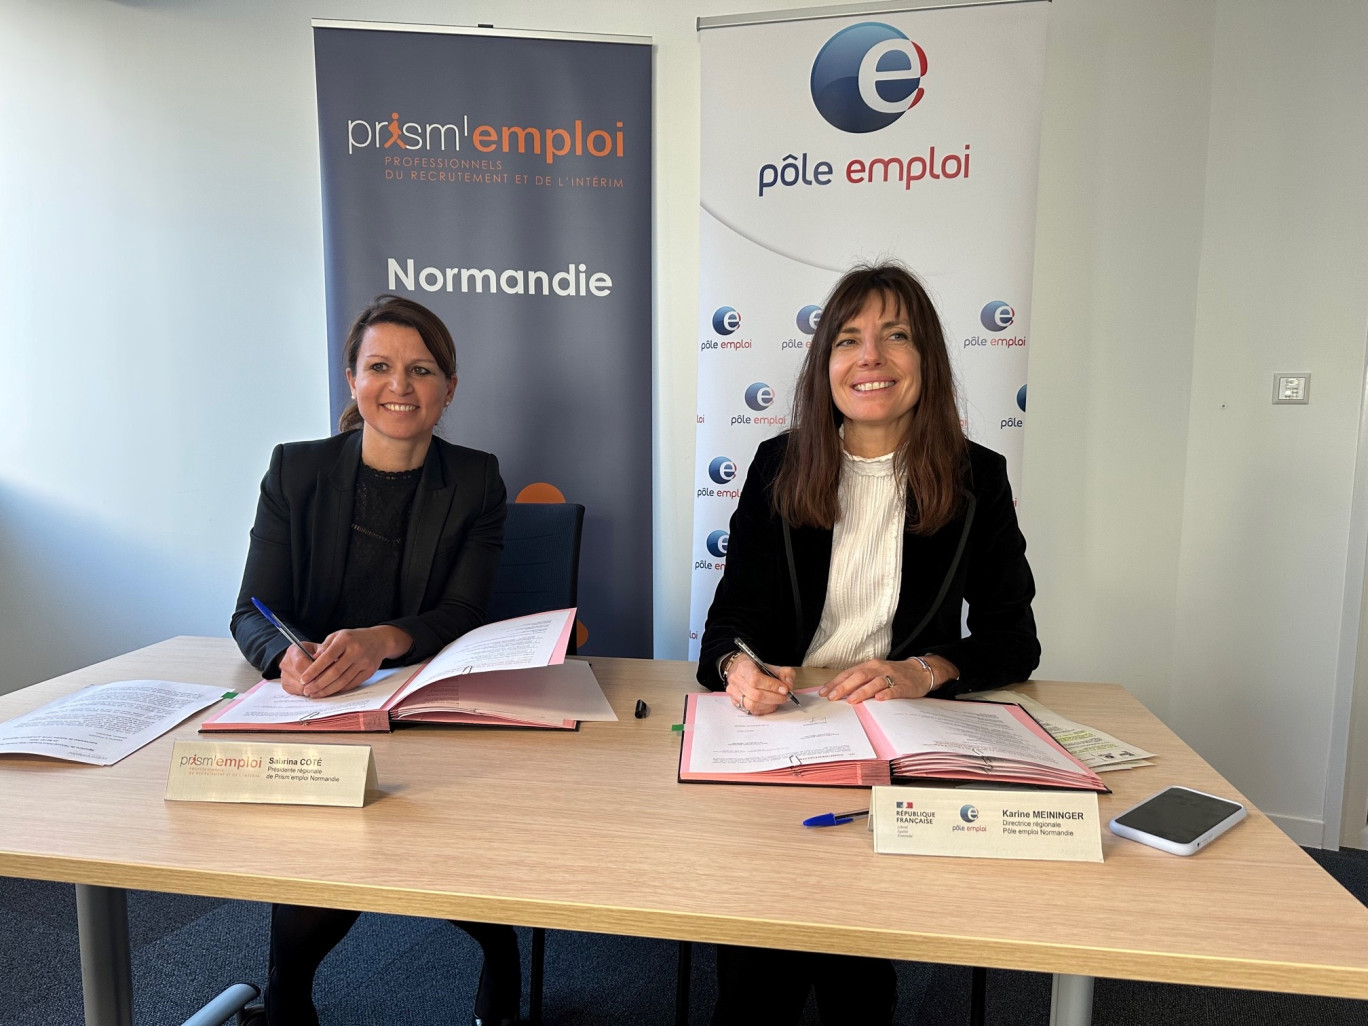 Sabrina Coté, Présidente régionale de Prism’emploi Normandie et Karine Meininger, directrice régionale Pôle emploi Normandie. (Photo DR)